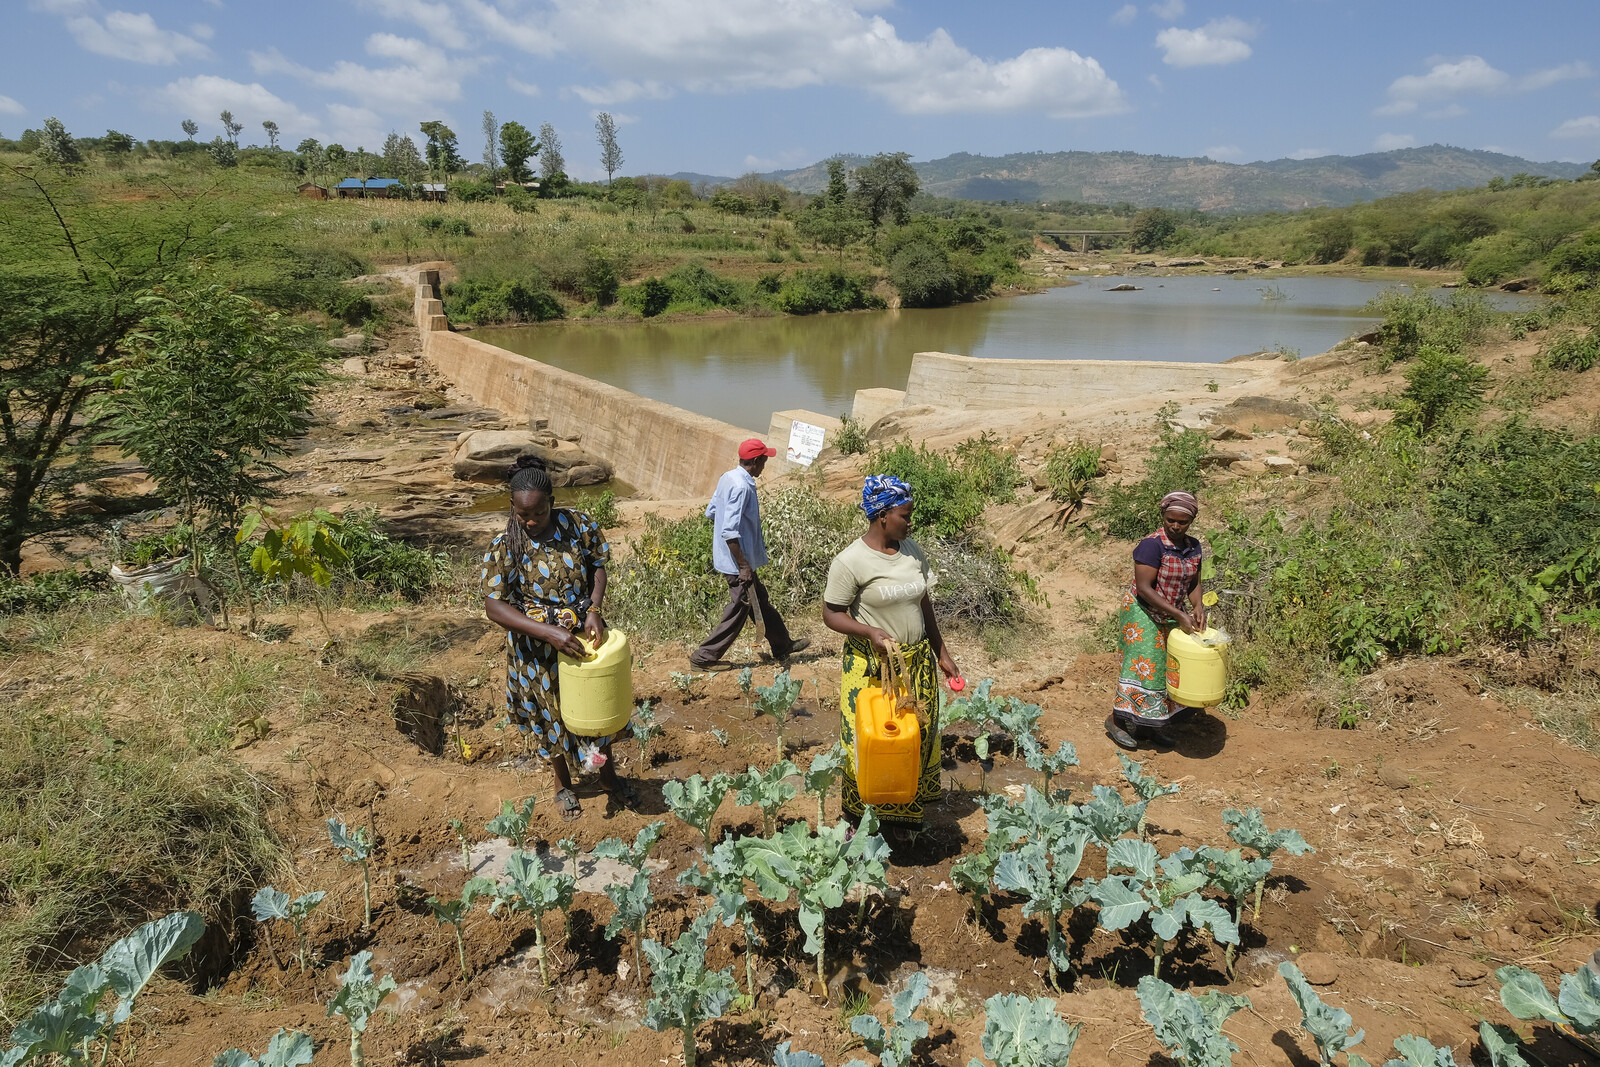 Hilfsprojekt in Kenia: Bau eines Damms verbessert Wasserversorgung der Menschen